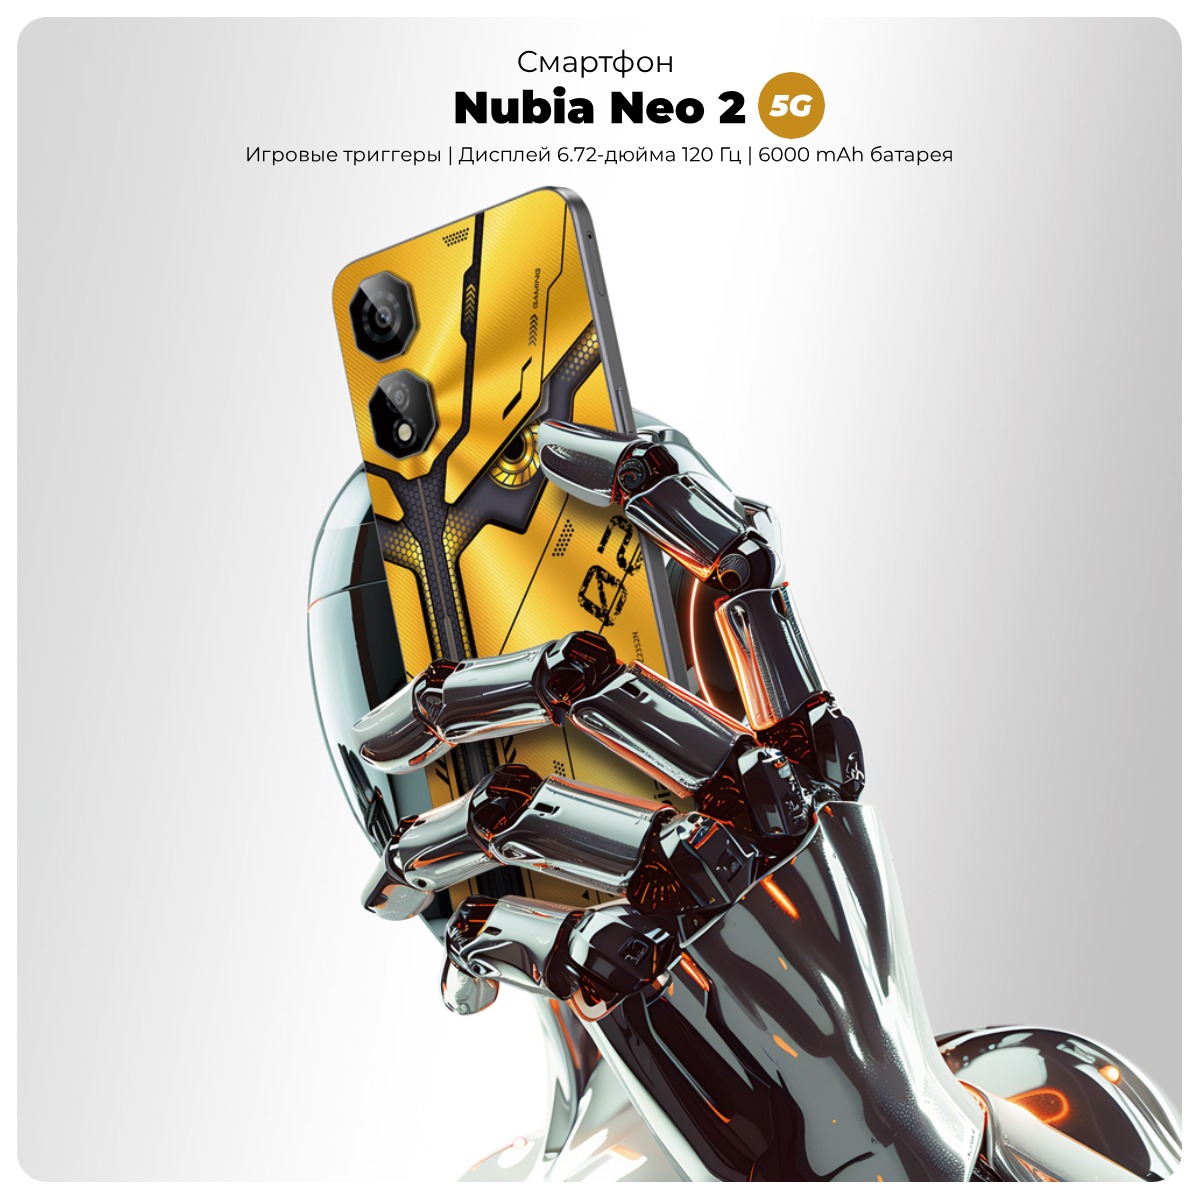 Nubia-Neo-2-5G-01